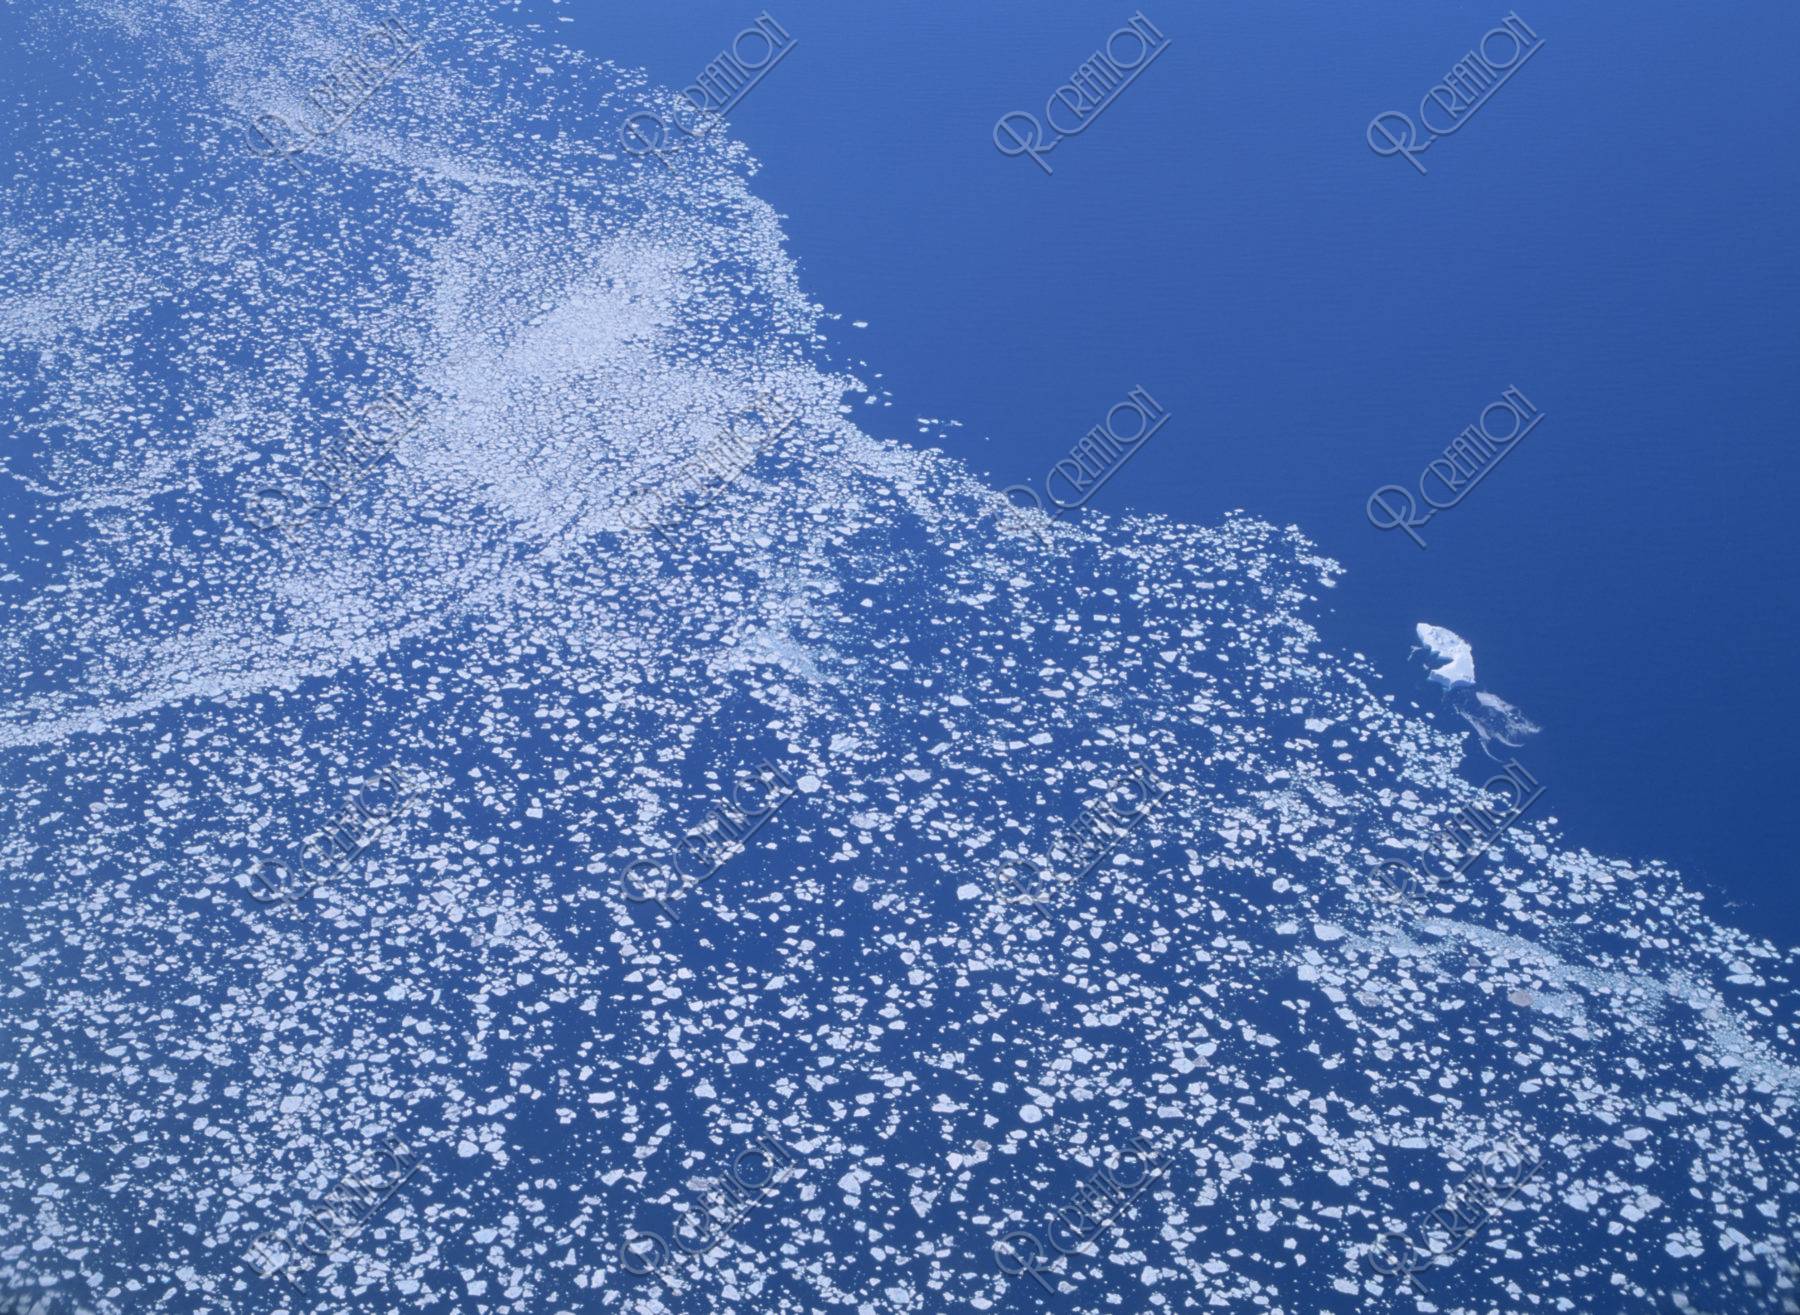 空撮 デンマーク海峡の流氷群